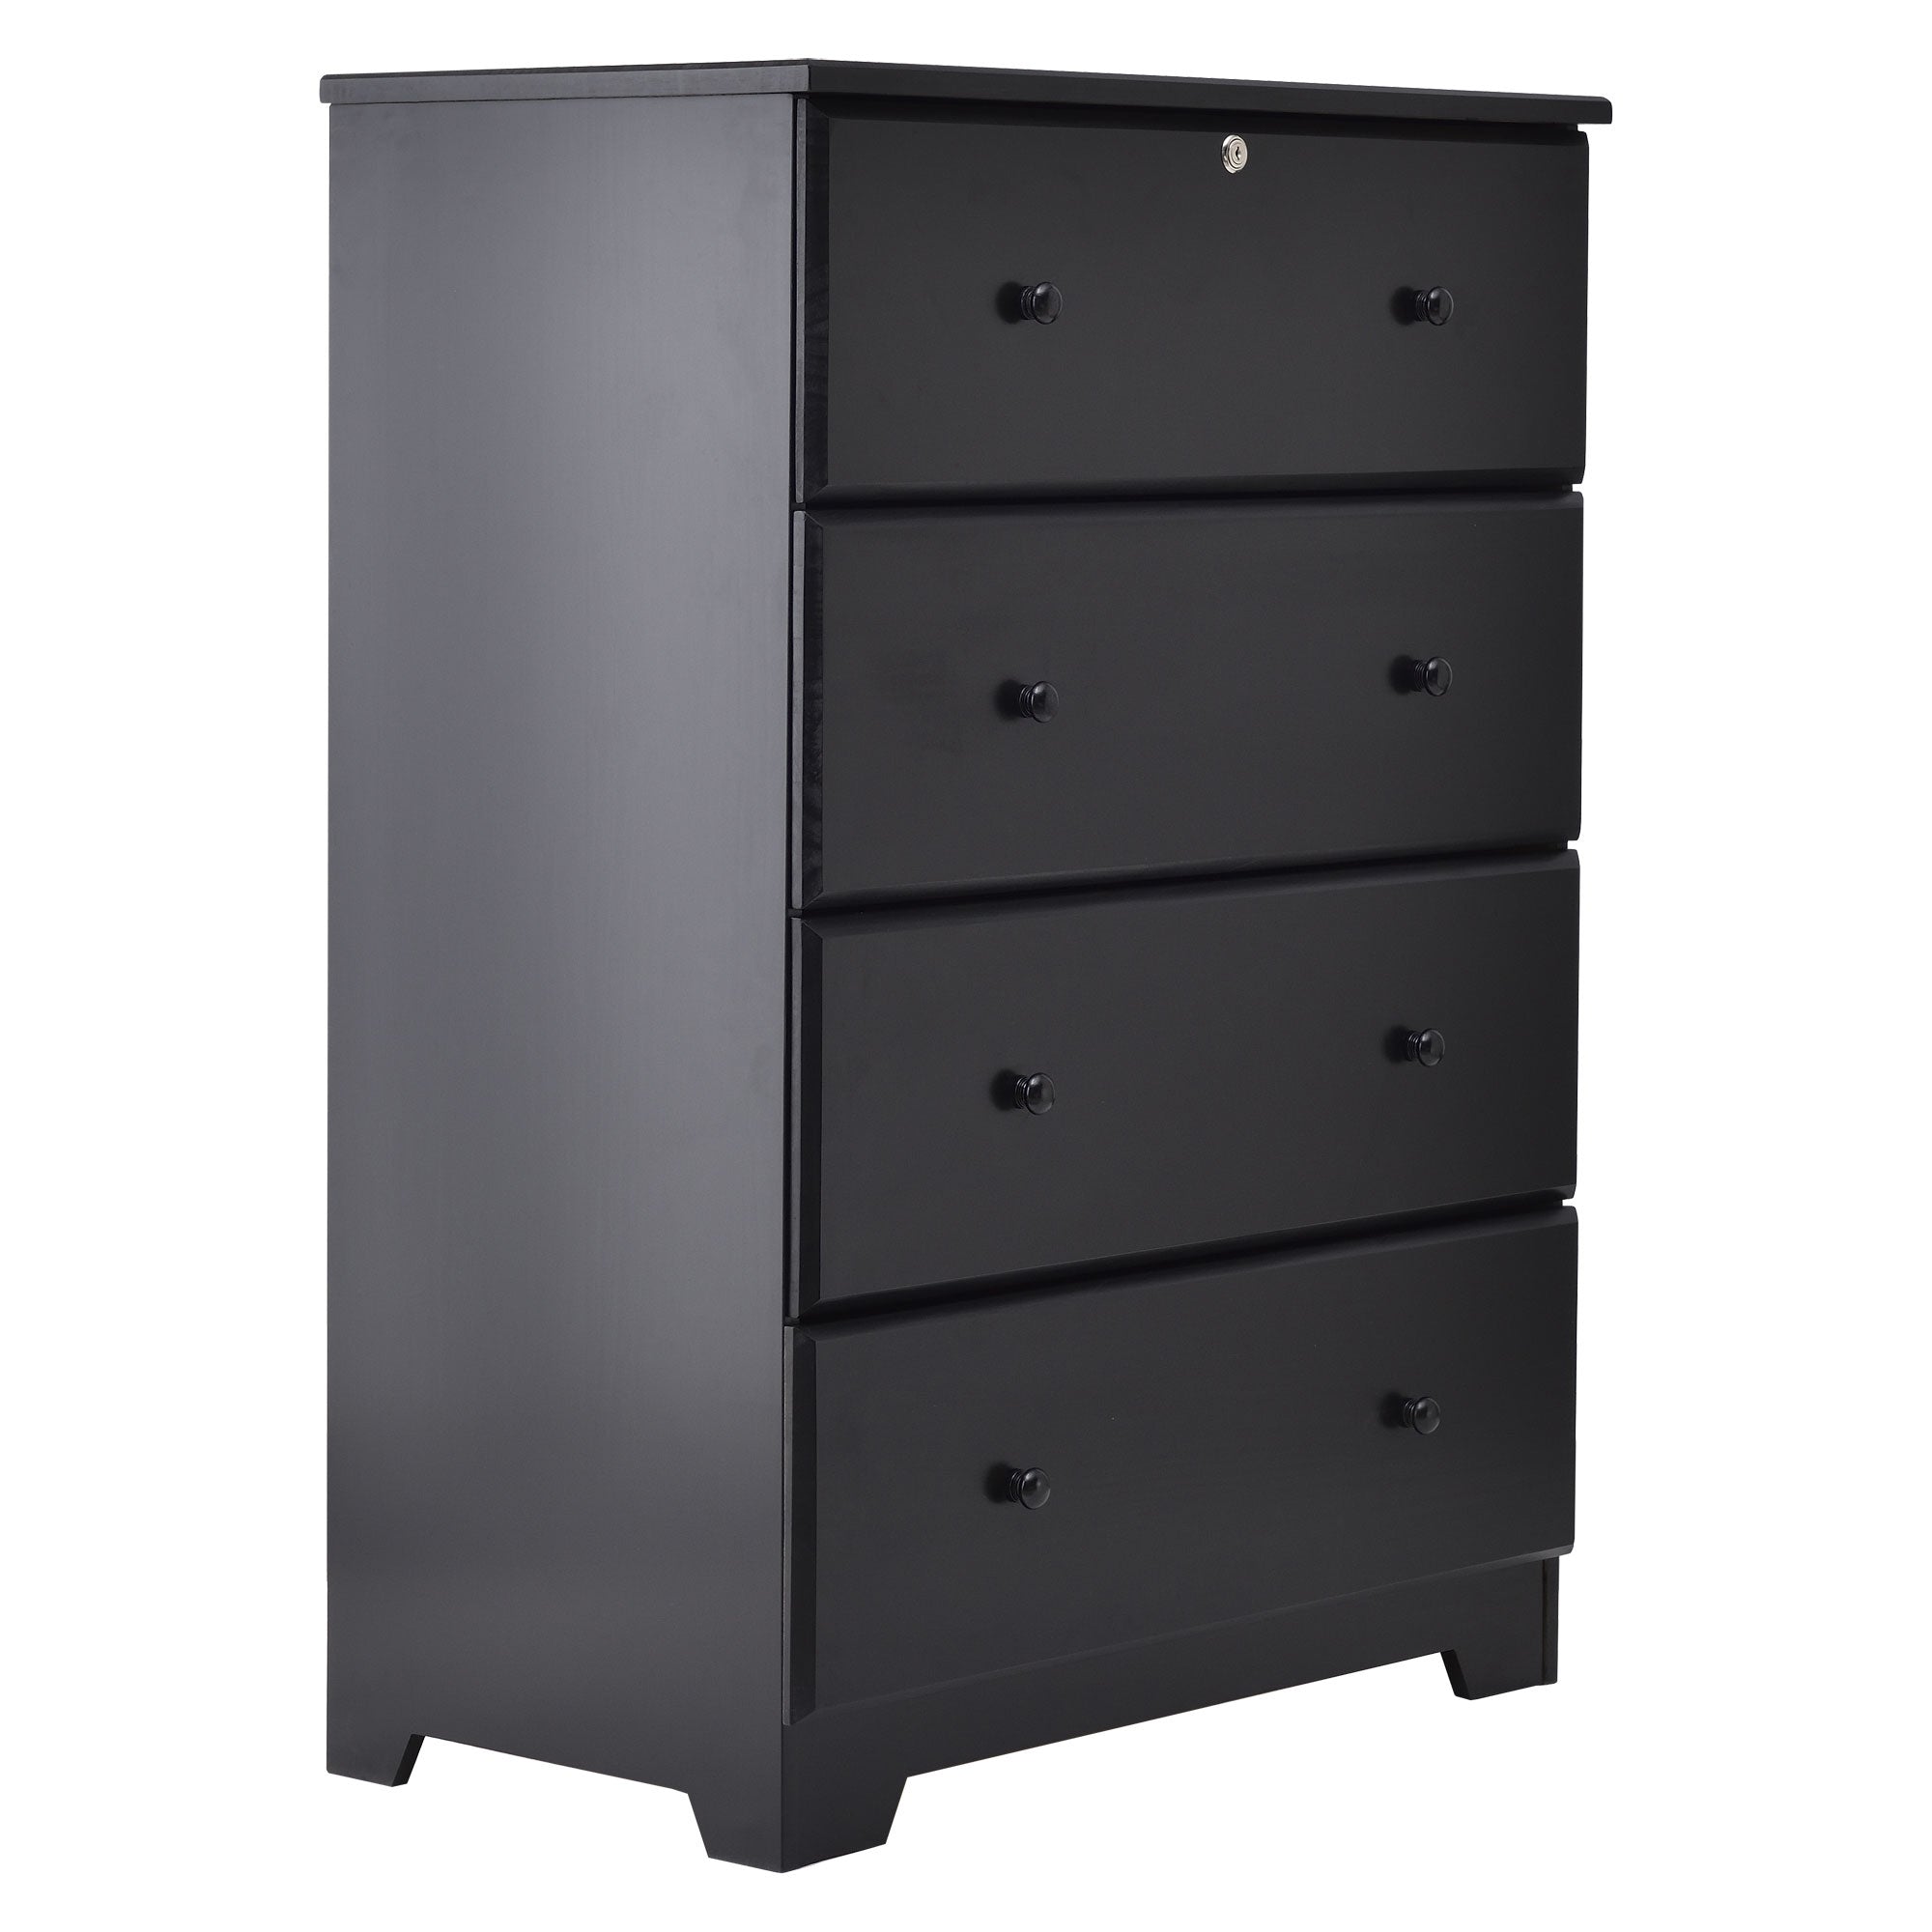 Color_Black | Isabela Solid Pine Wood 4 Drawer Chest Dresser